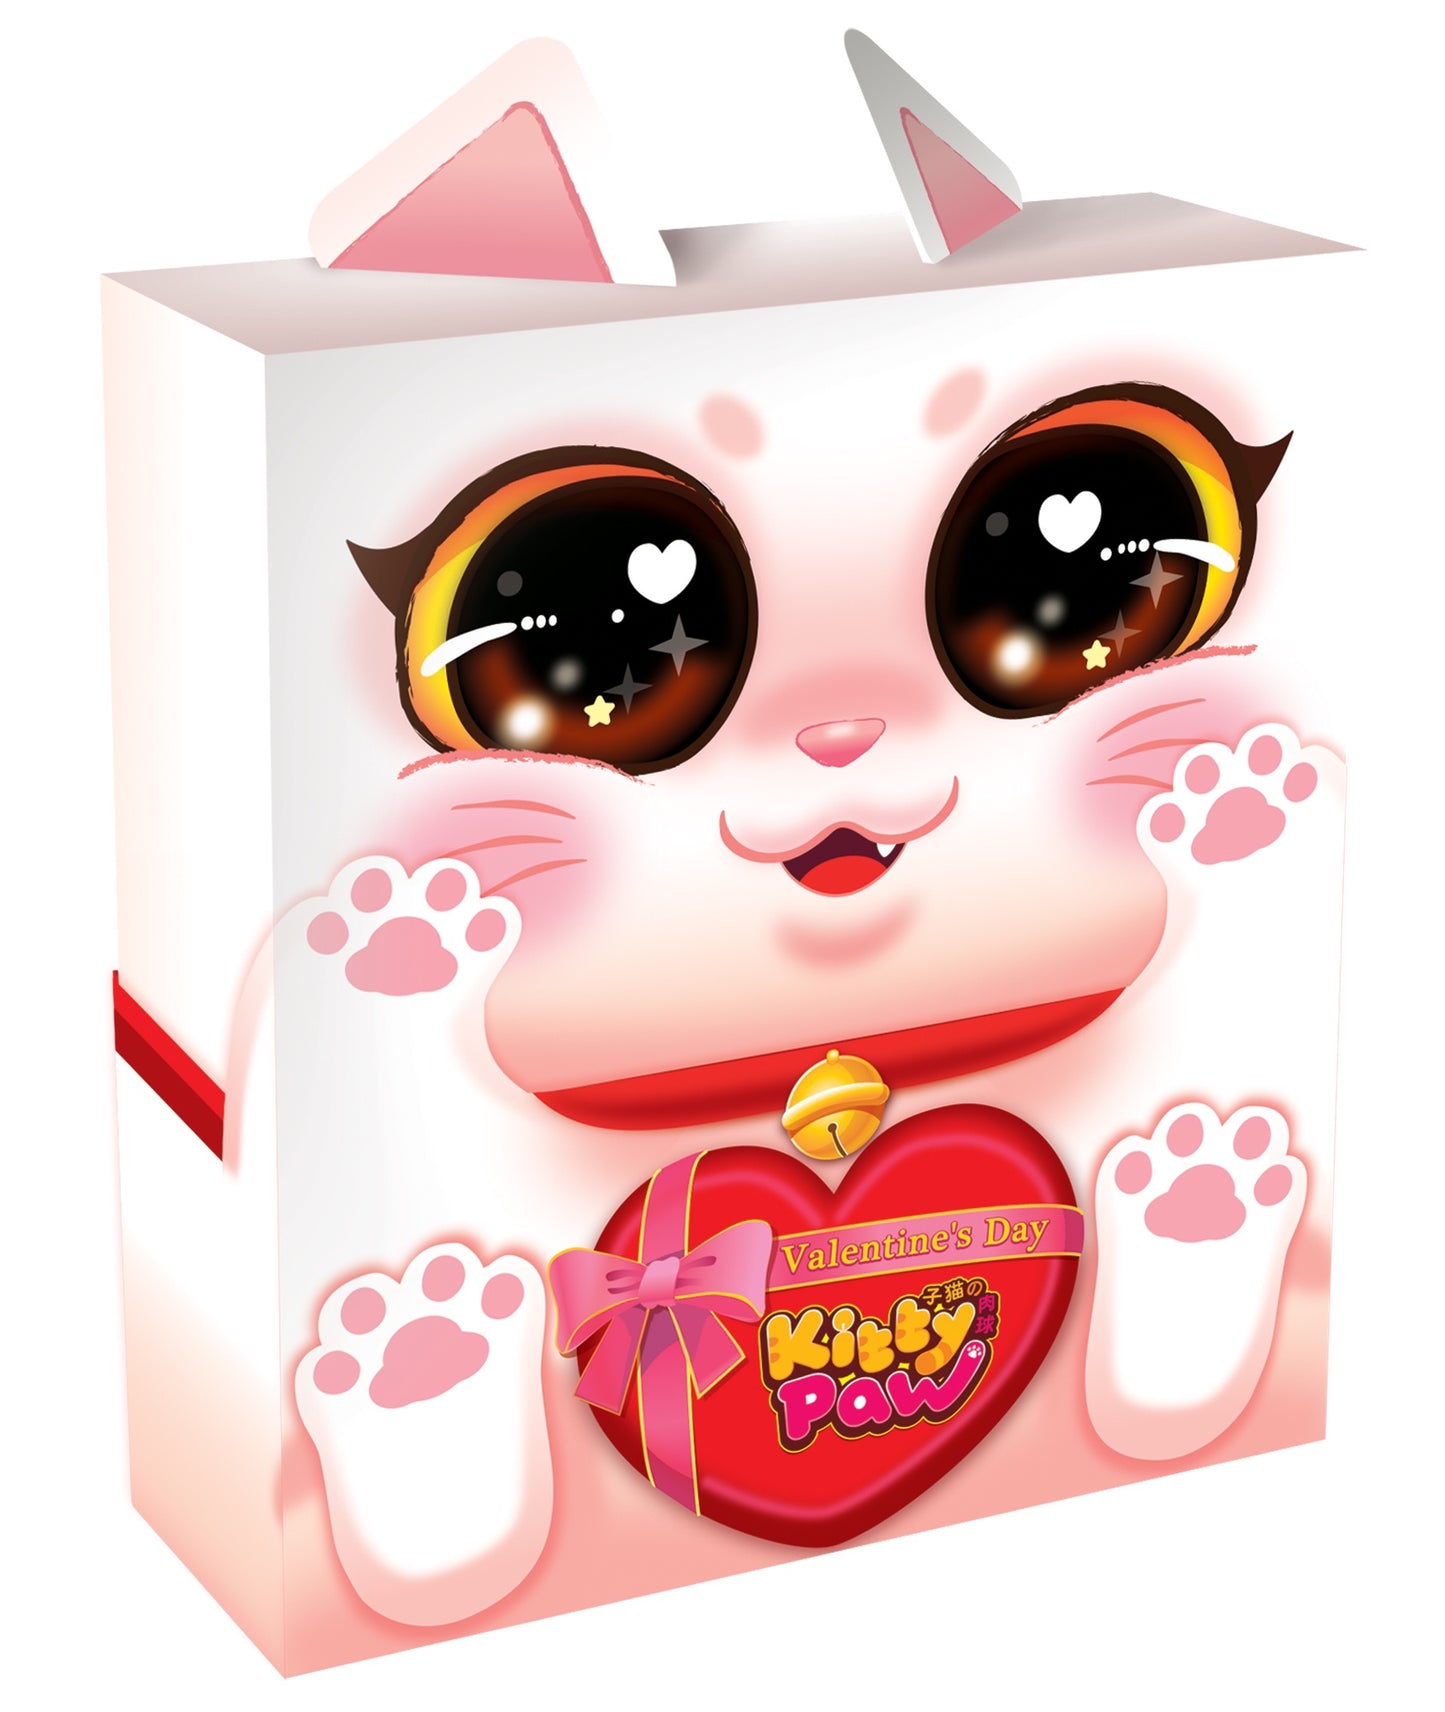 Kitty Paw Valentine's Day